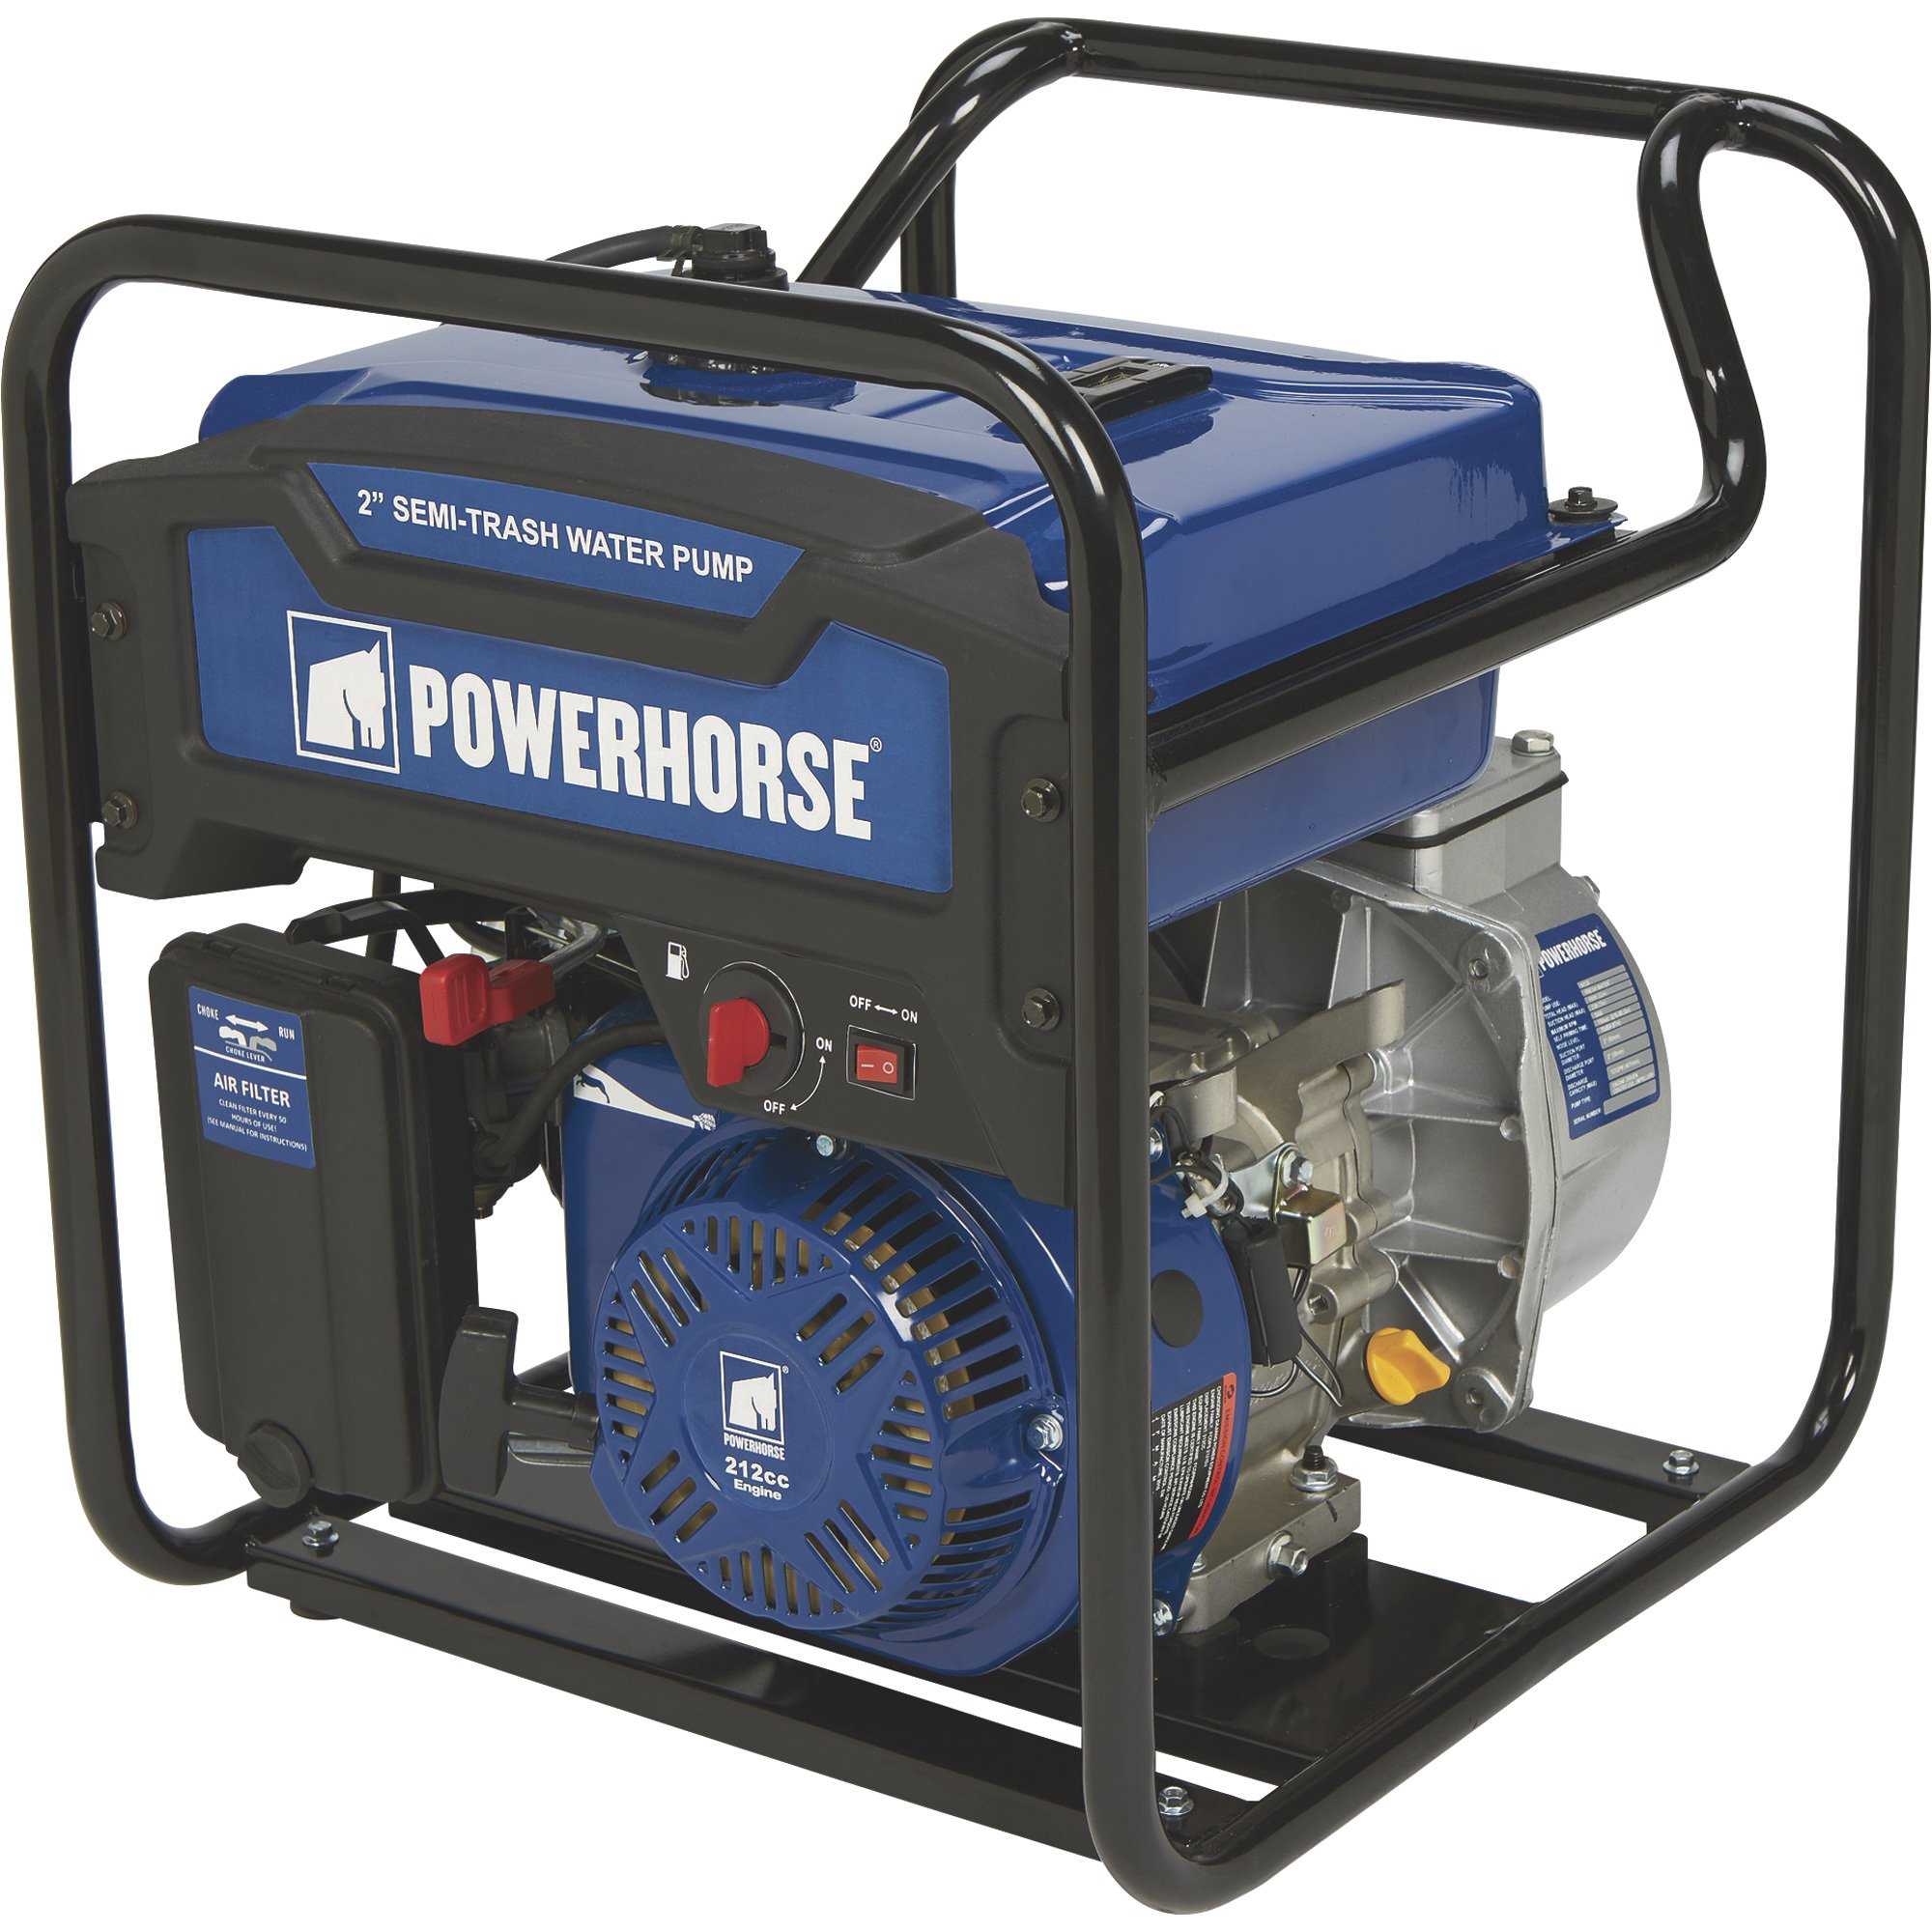 Powerhorse, Powerhorse 750123 Semi-Trash 2" Water Pump Extended Run 131 GPM 5/8" Solids Capacity New